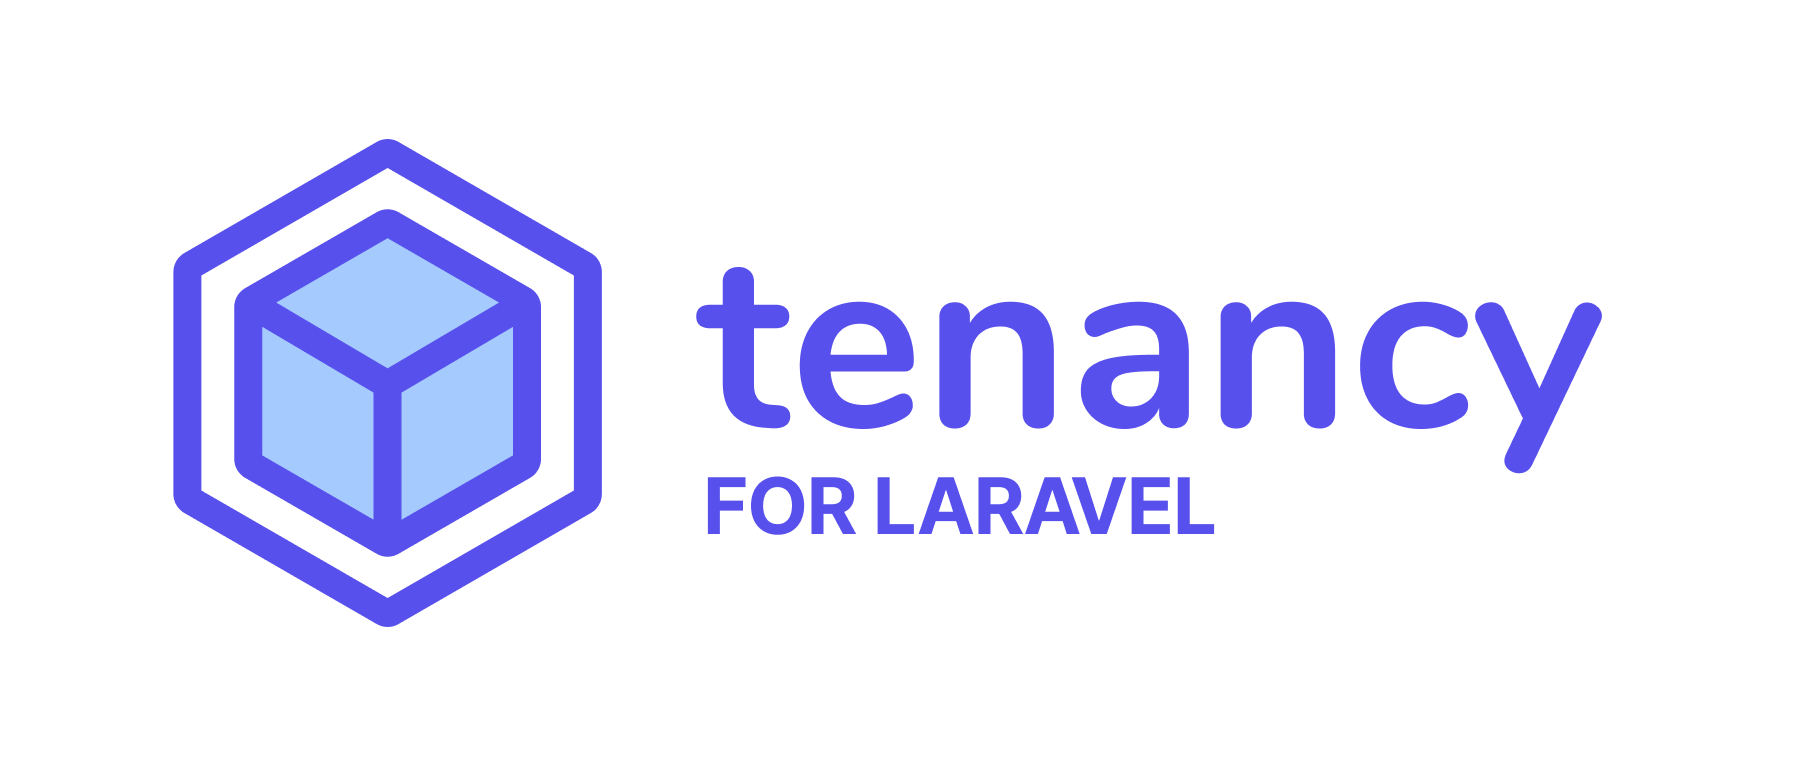 Tenancy for Laravel logo